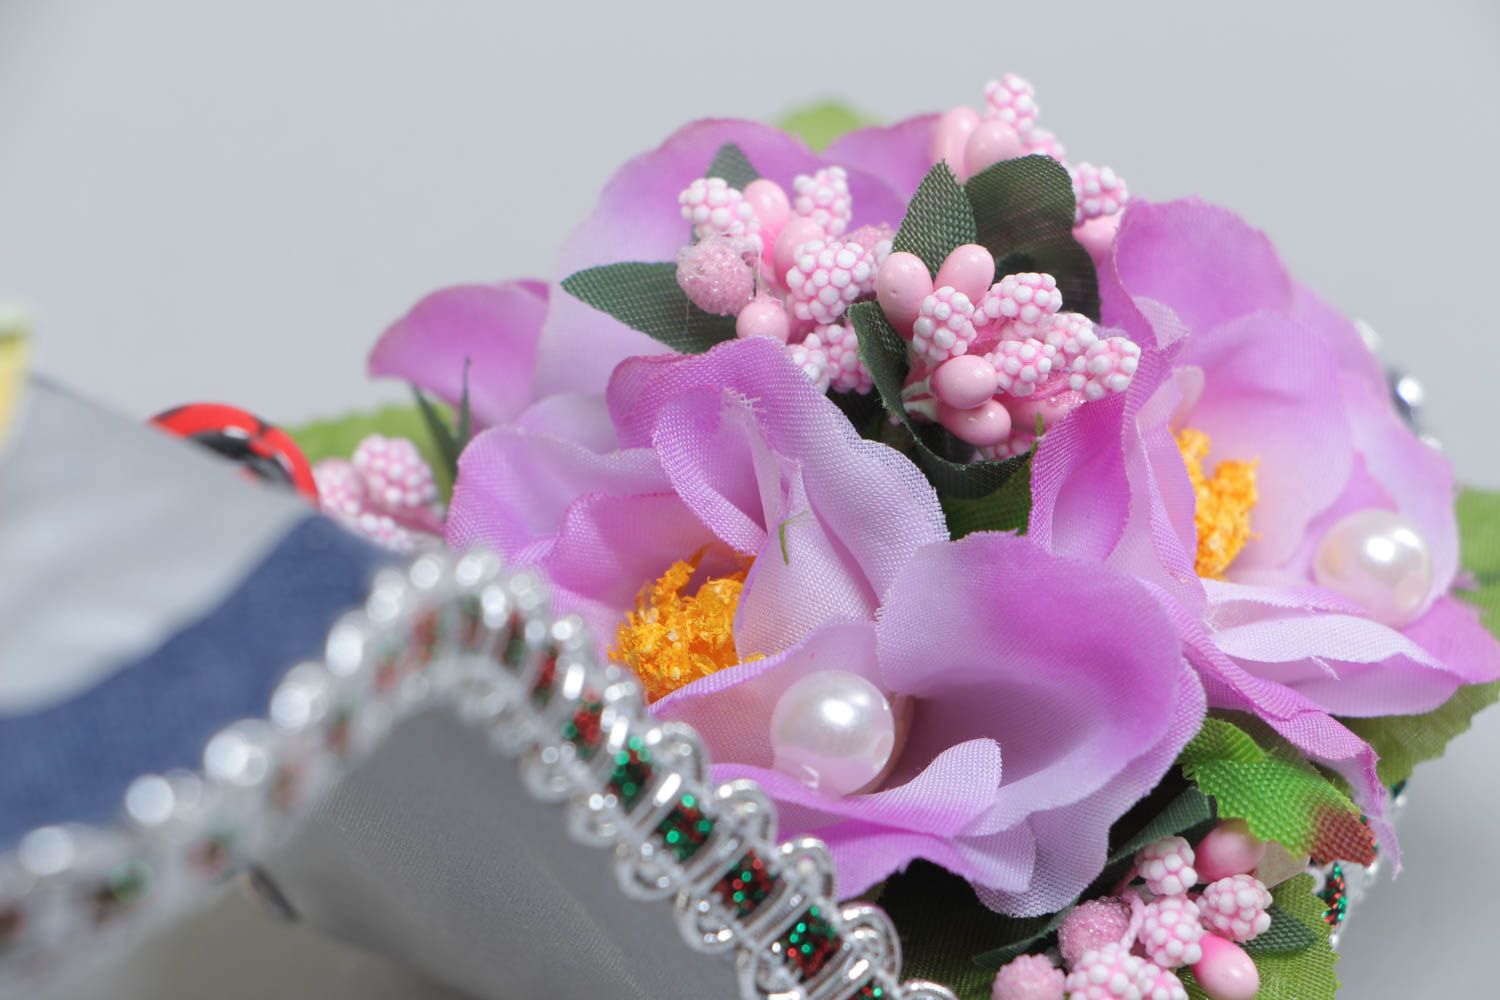 Декоративная туфелька с цветами для украшения дома топиарий цветная хэнд мейд фото 4